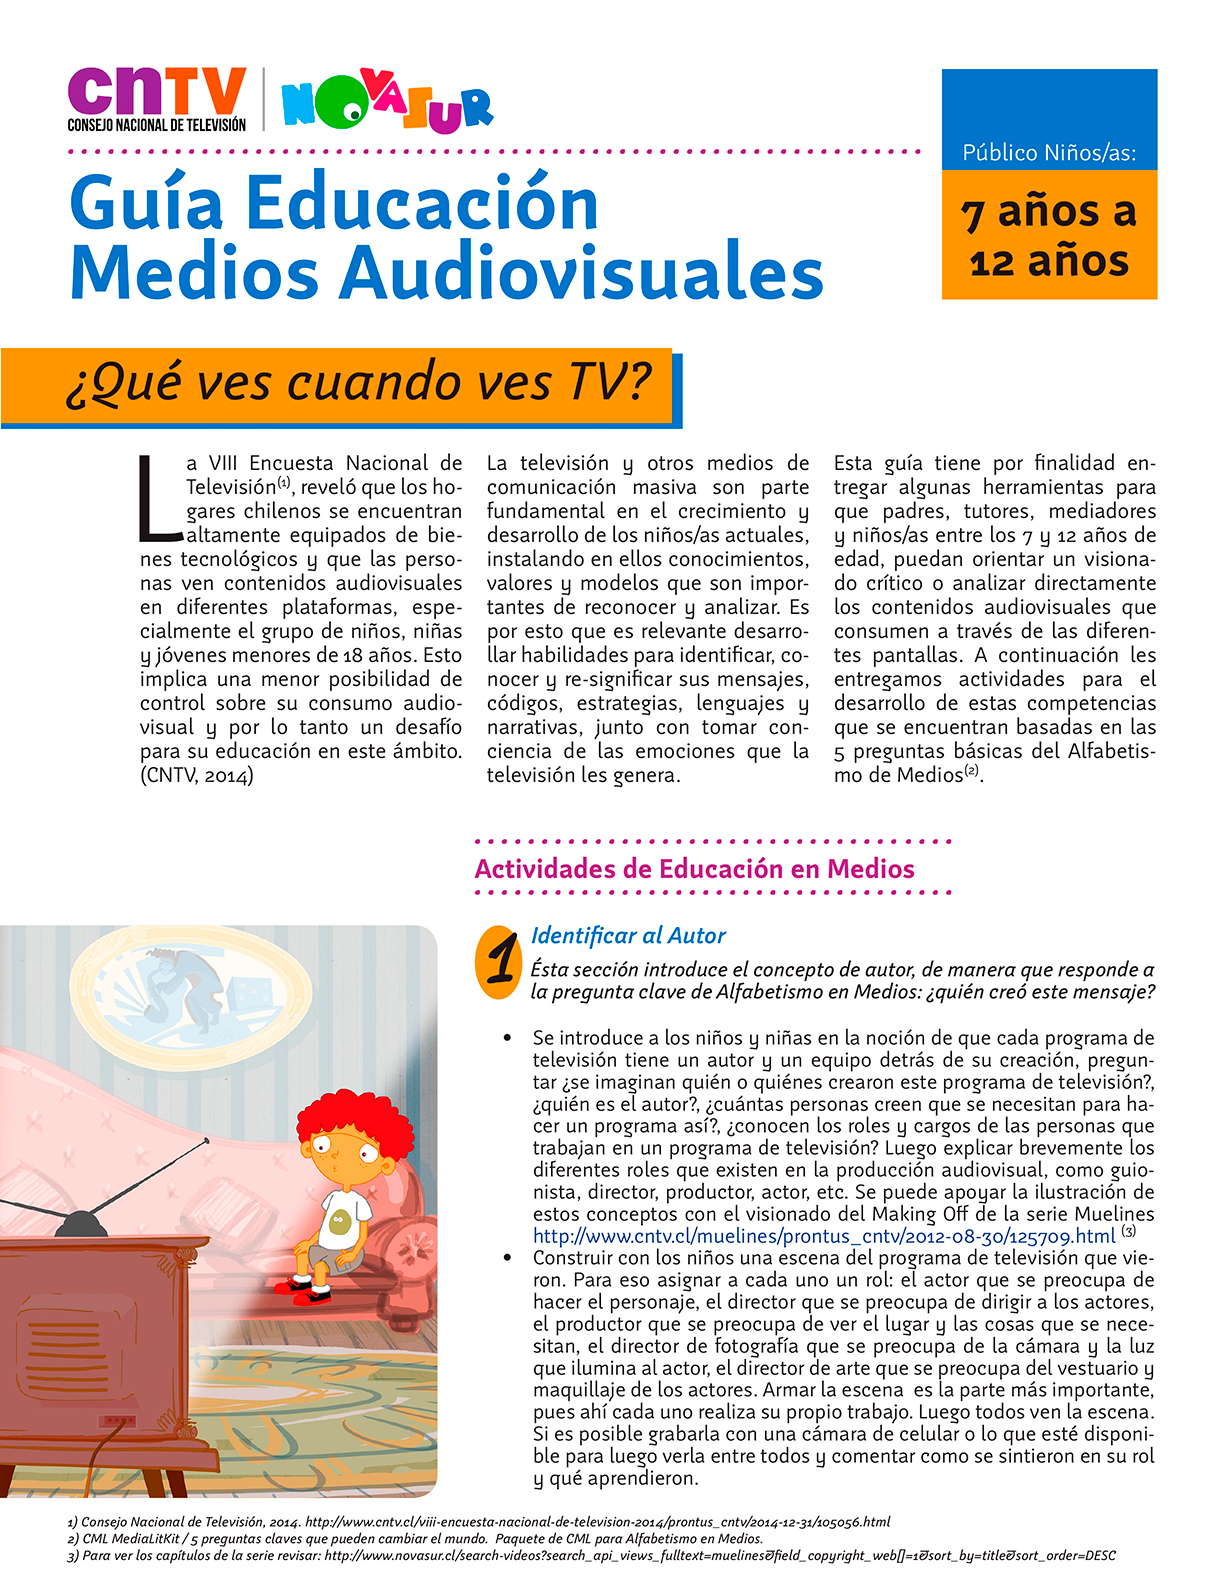 Guía Educación en Medios Audiovisuales para público niños/as de 7 a 12 años